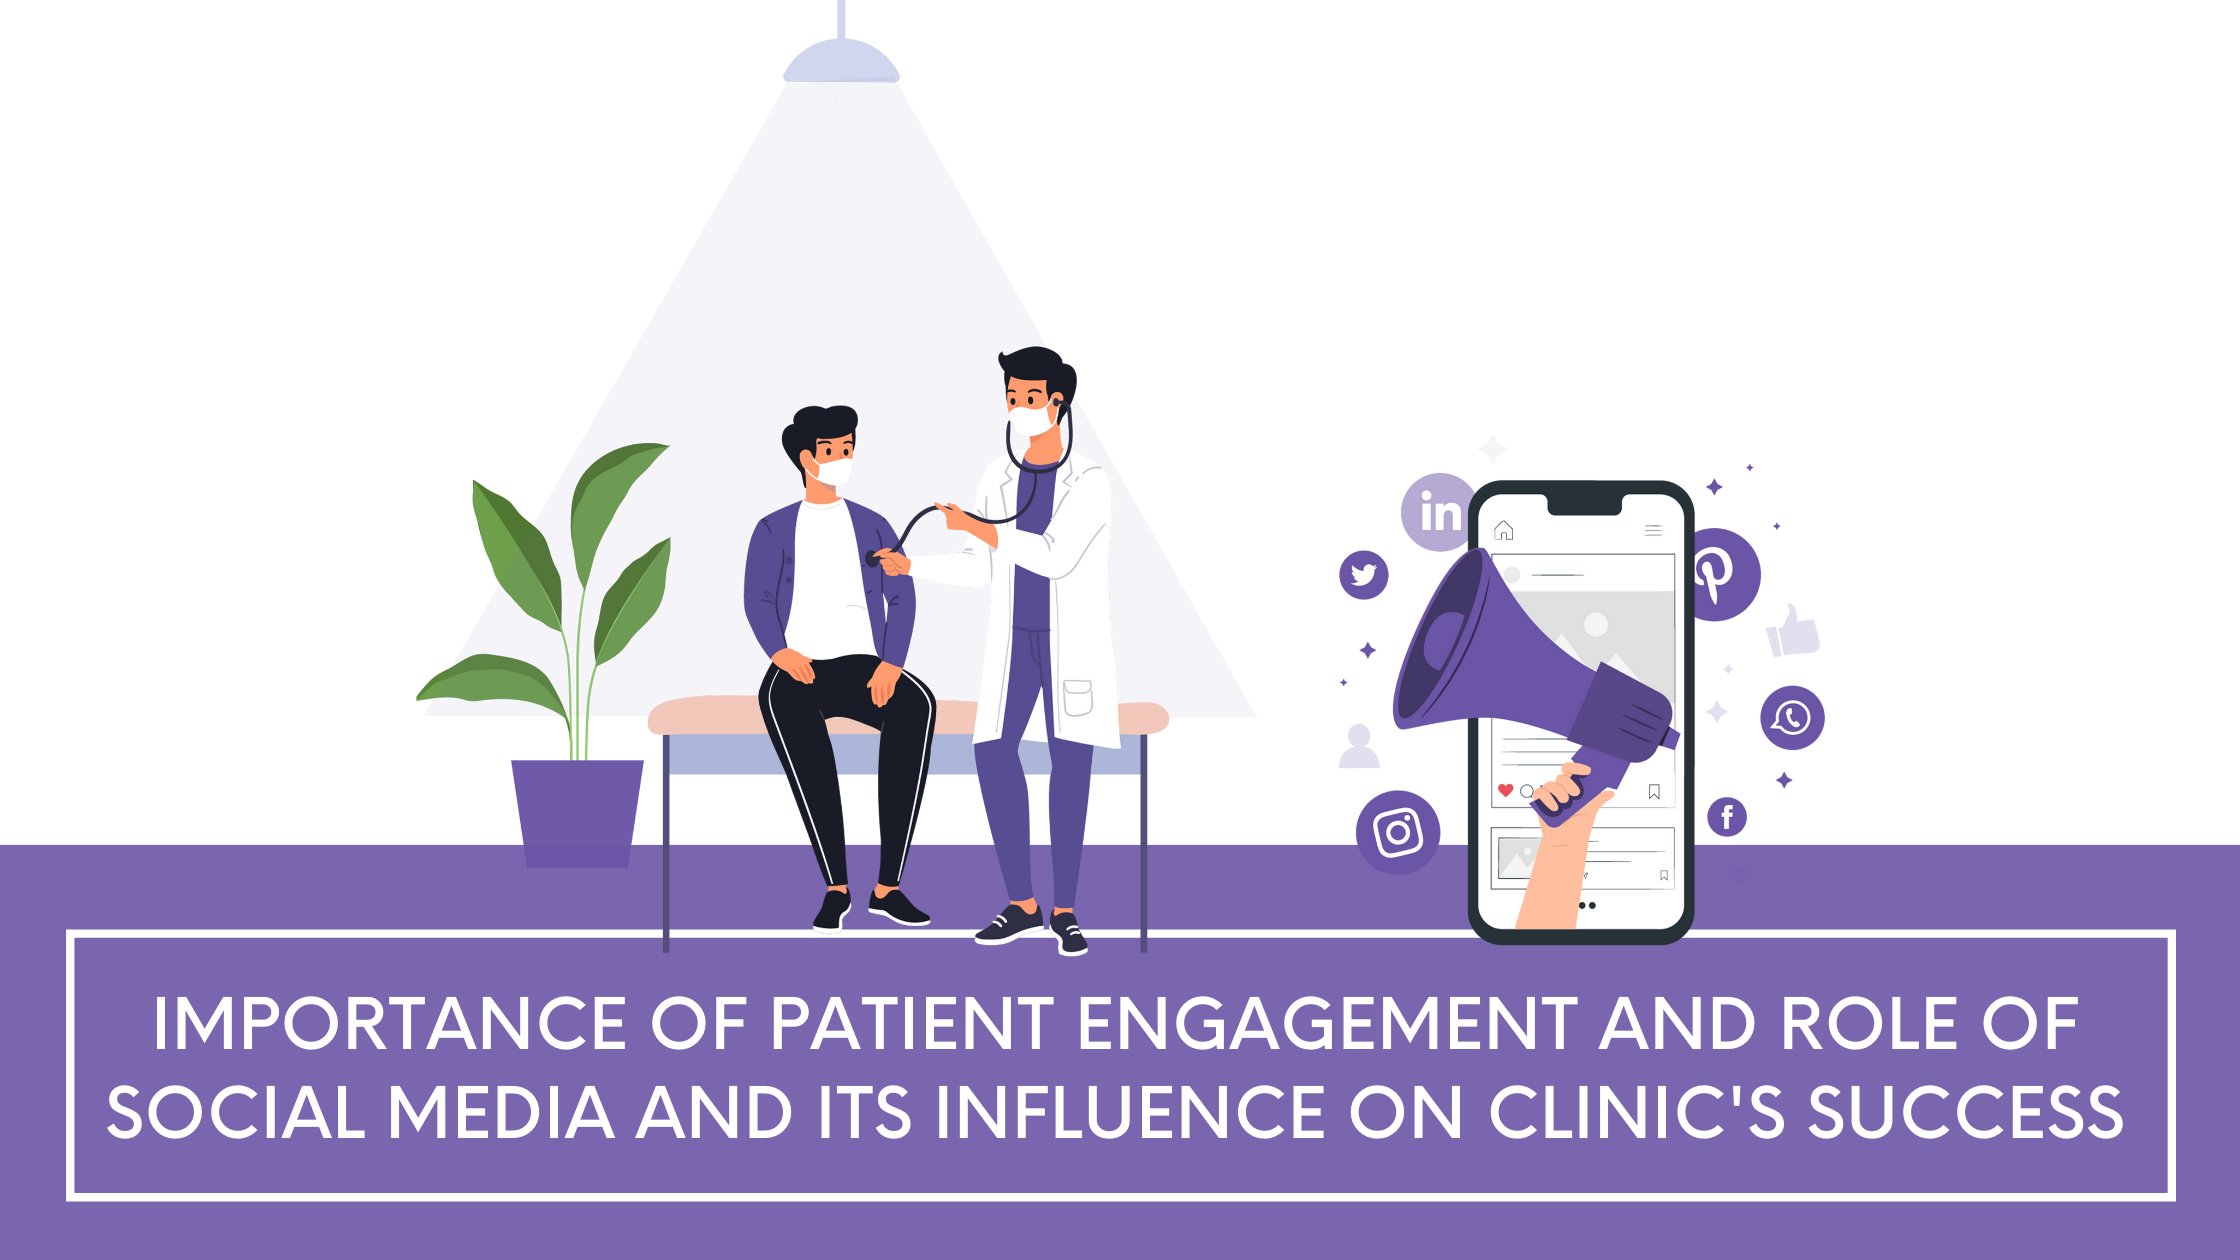 patient-engagement-socialmedia-role